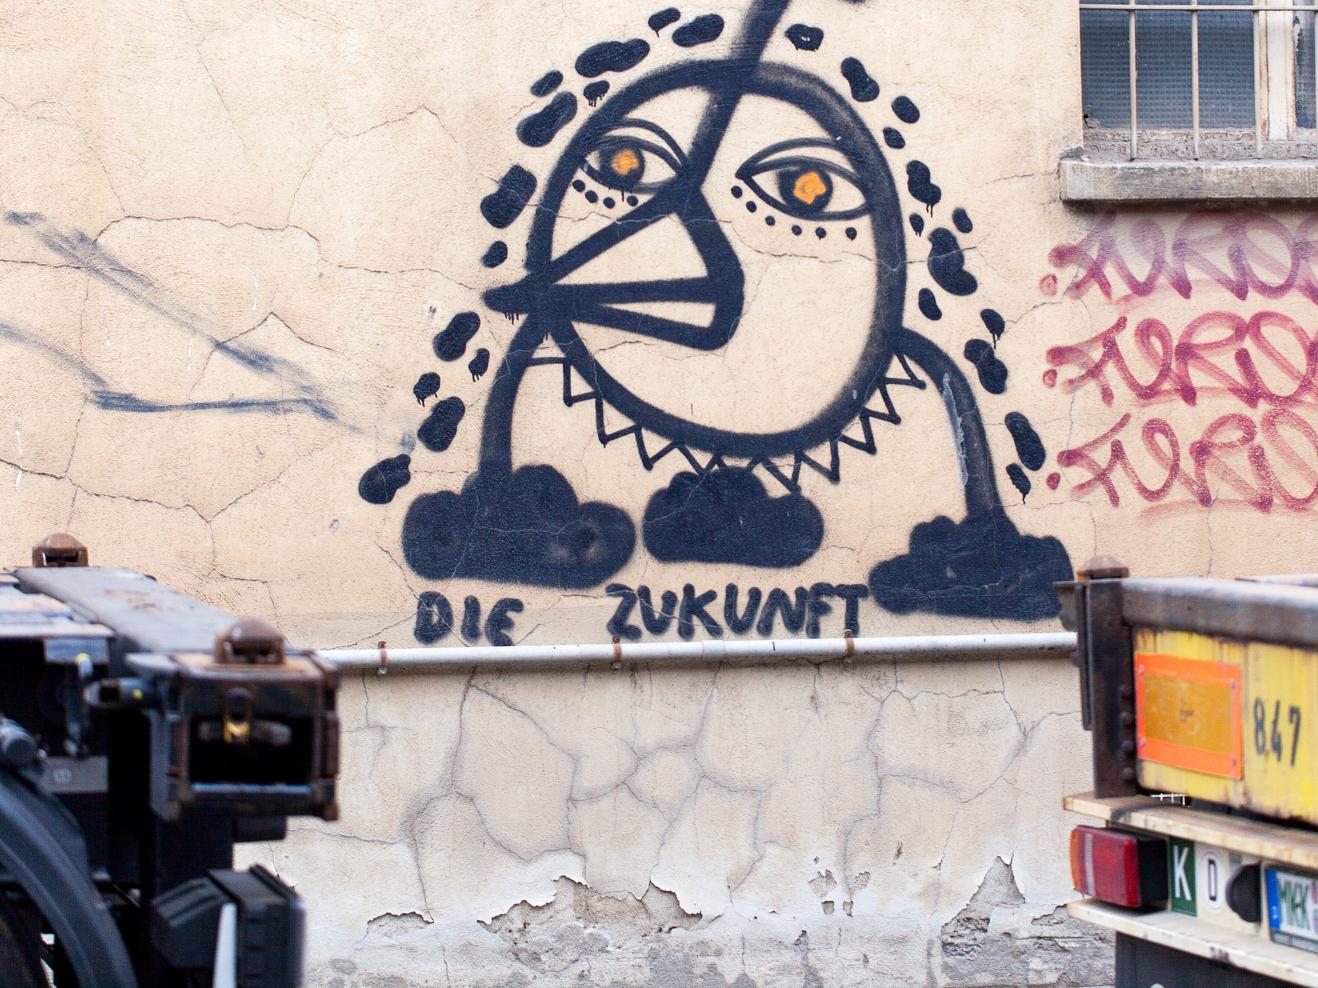 Graffiti an einer Hauswand: Ein Fabelwesen und der Text "Die Zukunft"